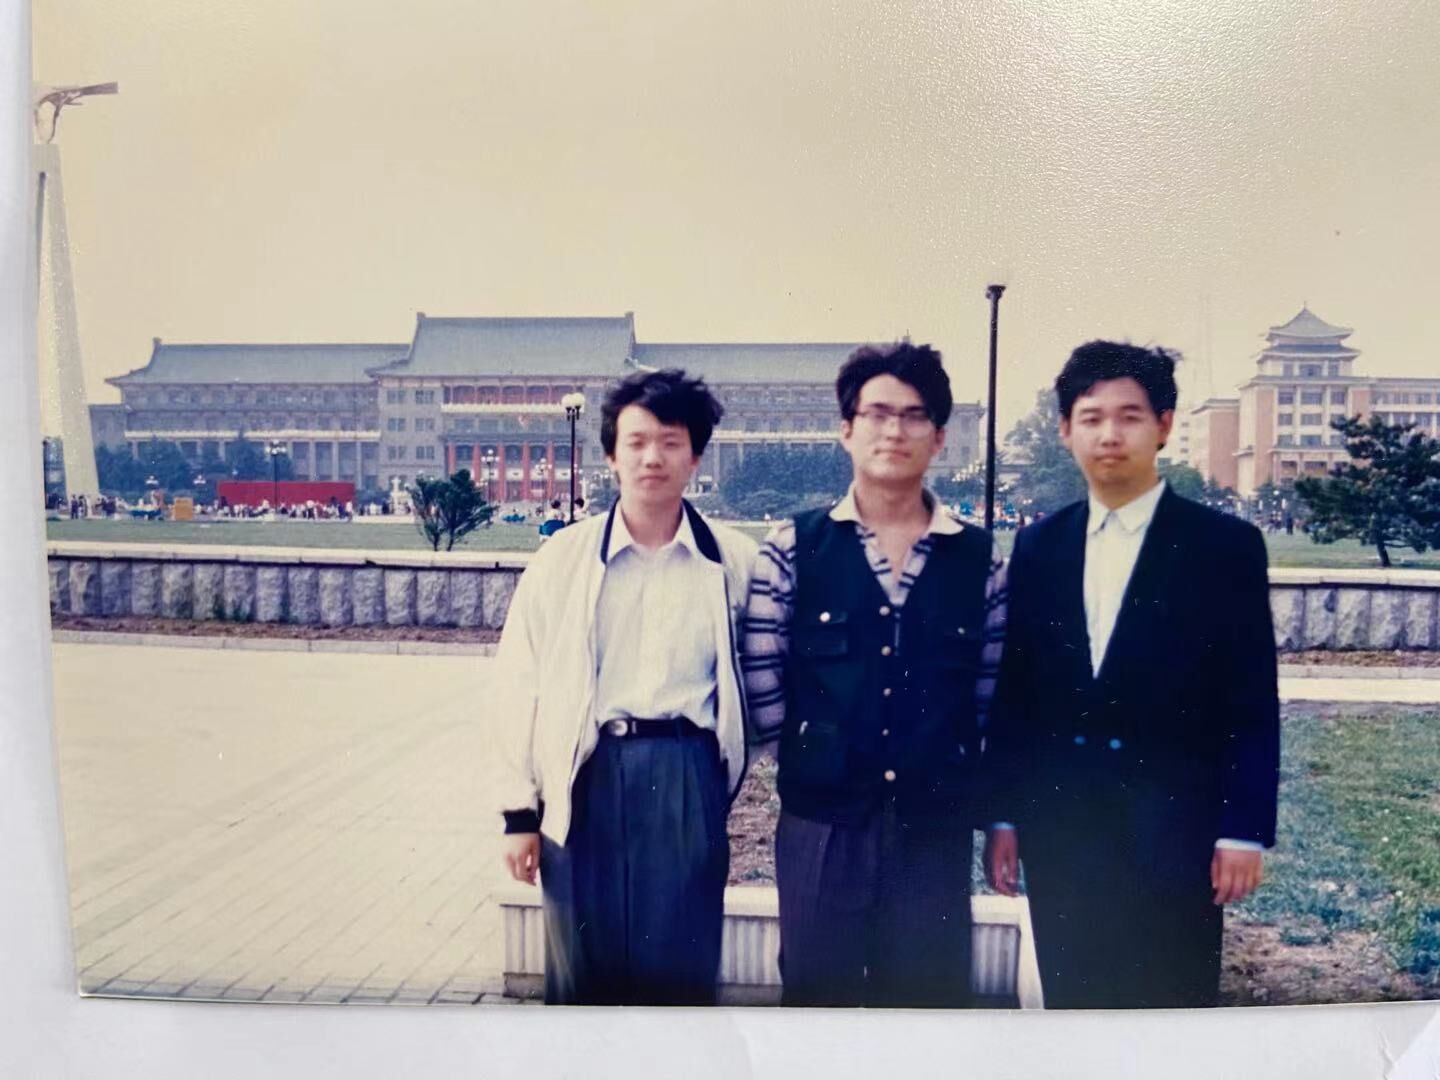 中间是书屋创办者之一张闯，右一是郑军，左一是吉大首届科幻协会会长陈建